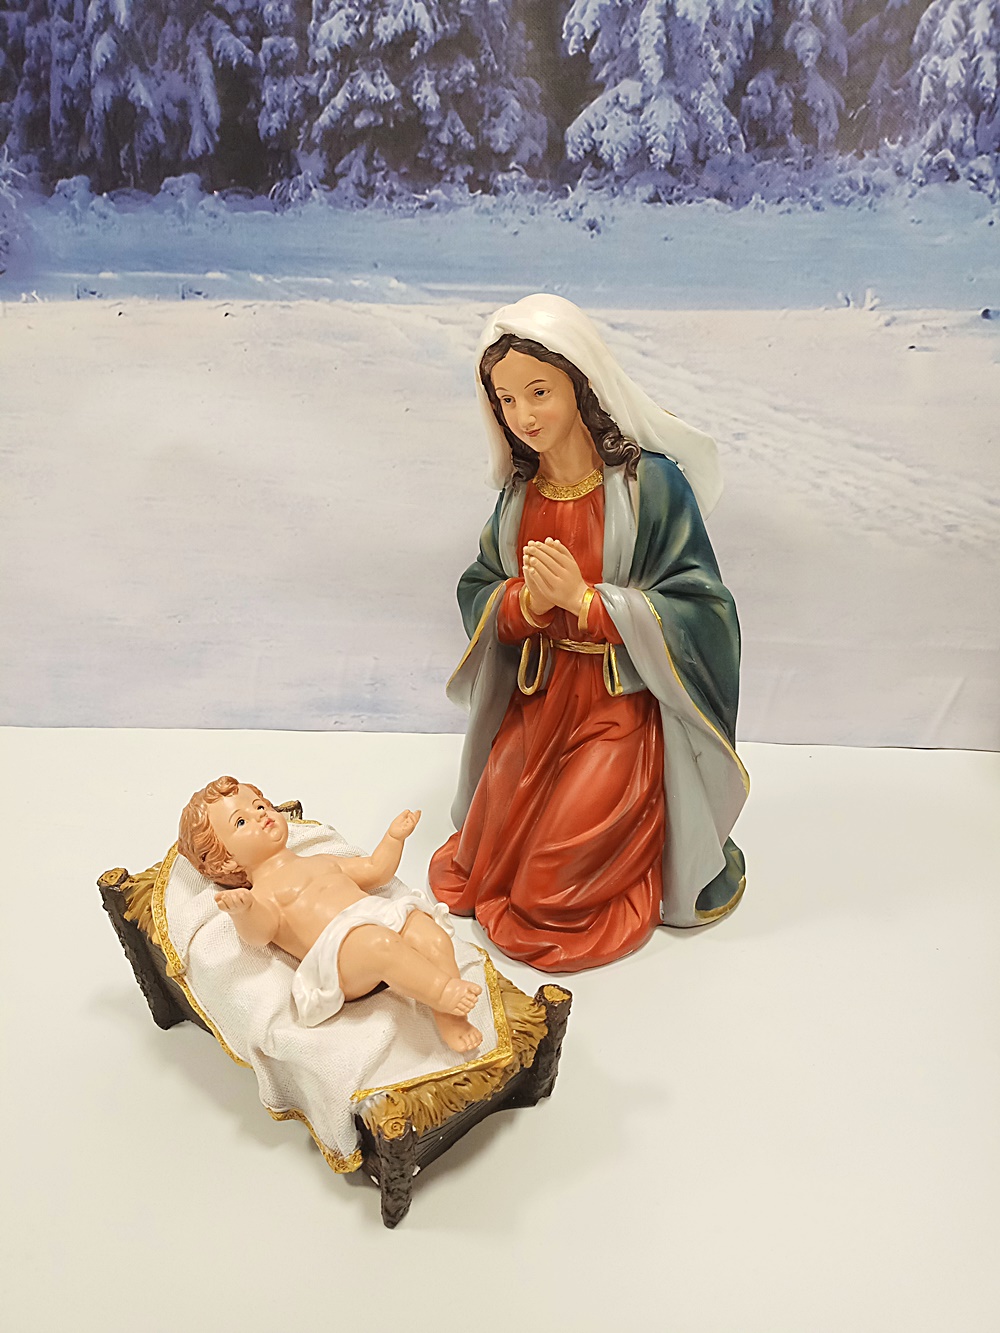 figurka Matki Bożej do szopki, figura do szopki Maryi, Szopka Bożonarodzeniowa